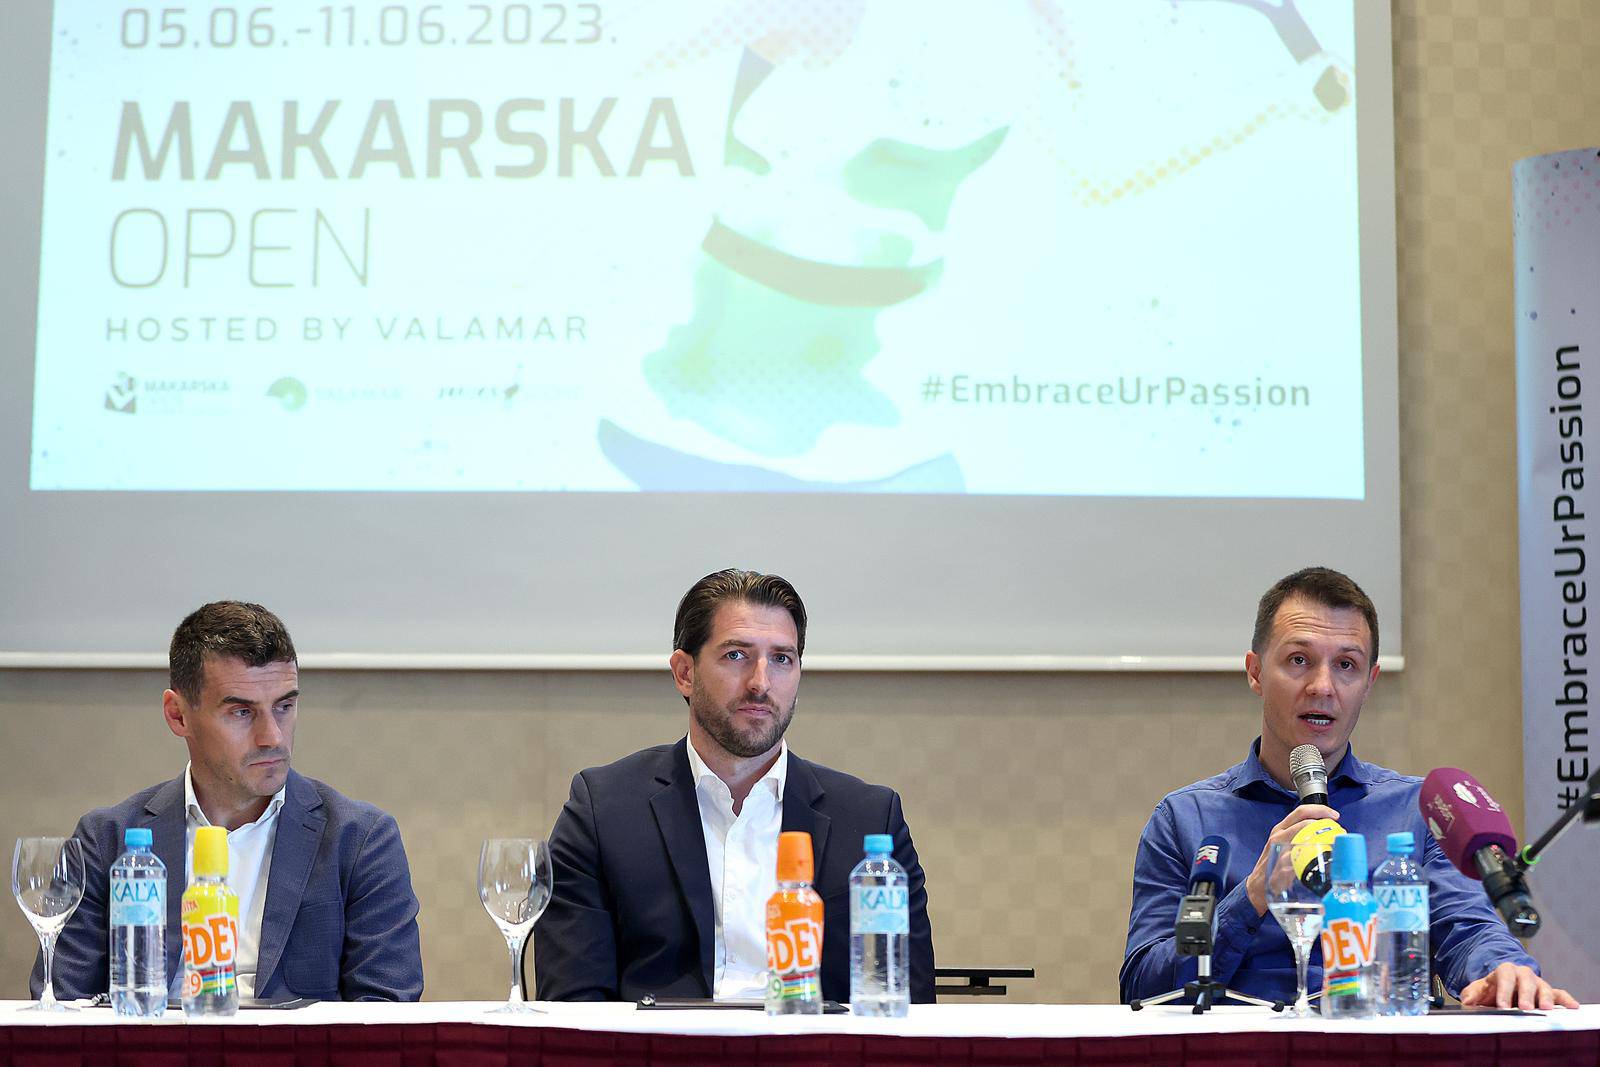 Zagreb: Predstavljen novi turnir WTA Makarska Open